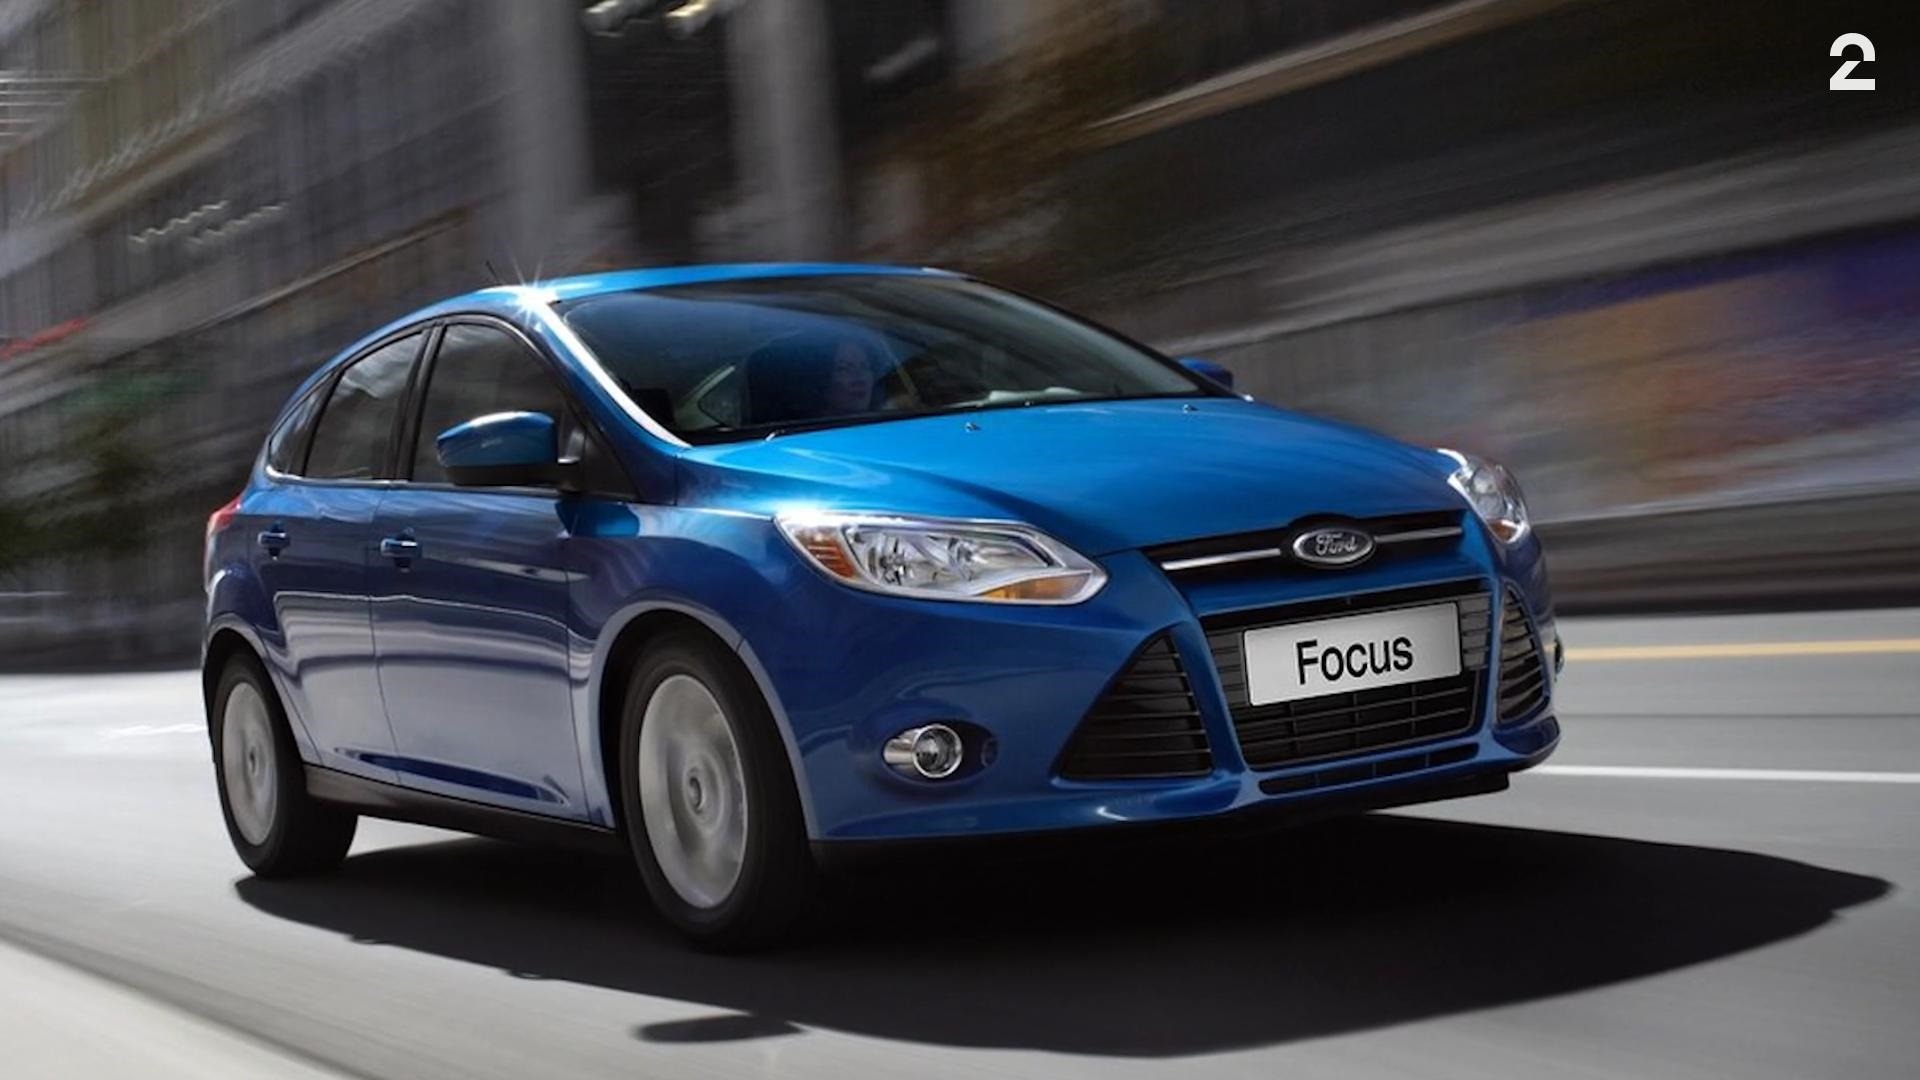 Billigbil: Brukt Ford Focus